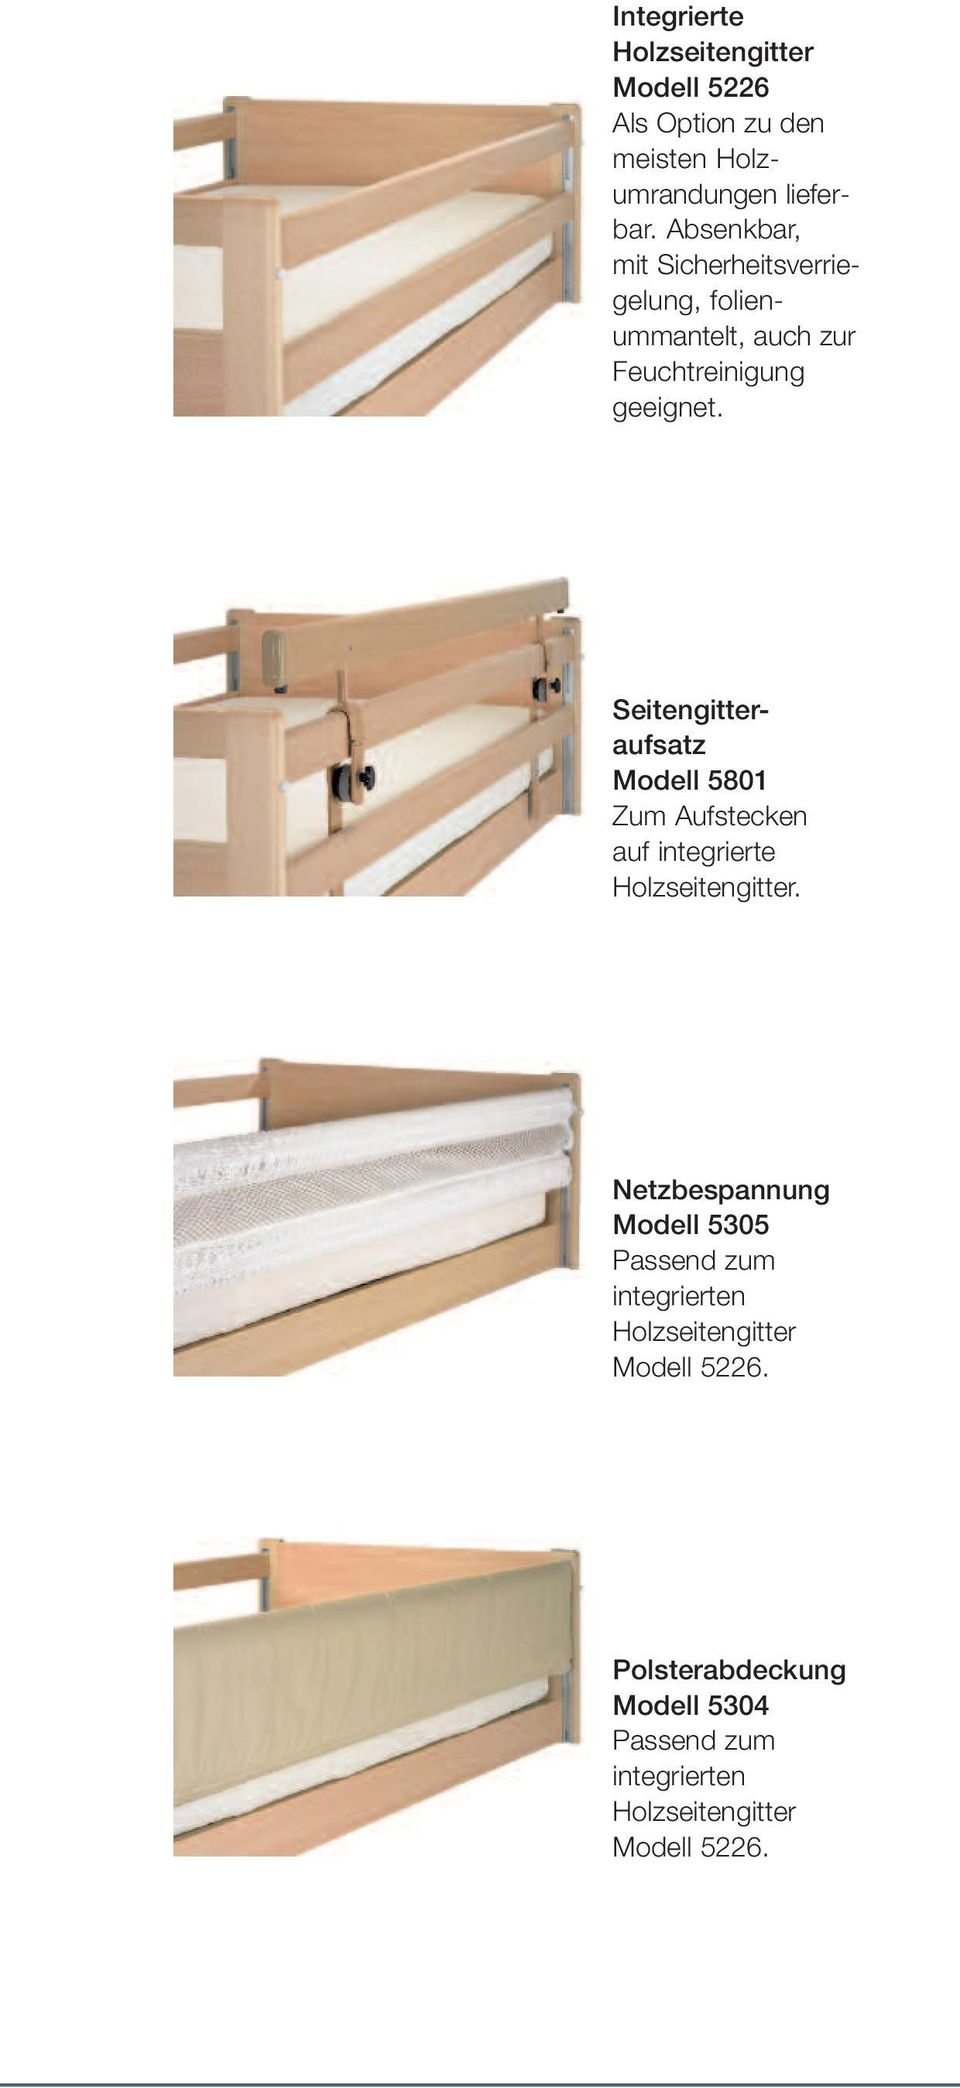 Seitengitteraufsatz Modell 5801 Zum Aufstecken auf integrierte Holzseitengitter.